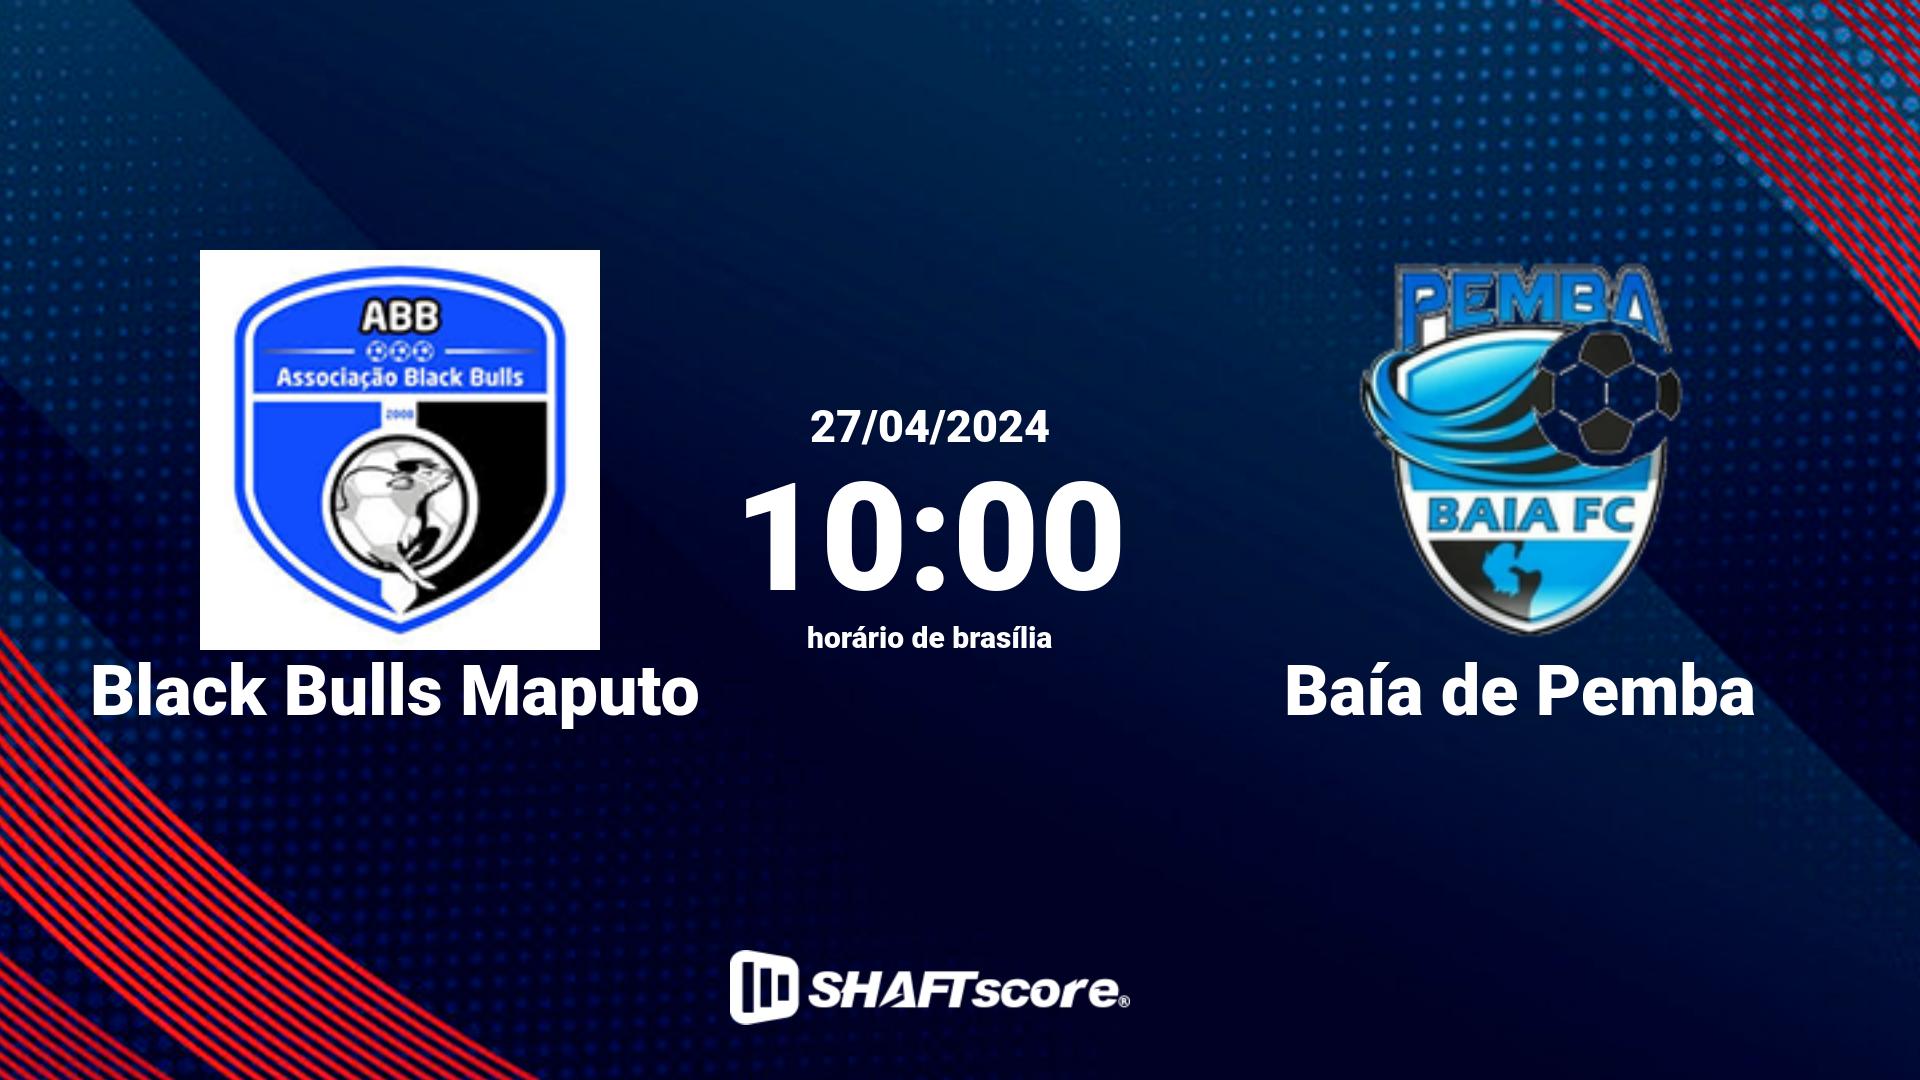 Estatísticas do jogo Black Bulls Maputo vs Baía de Pemba 27.04 10:00